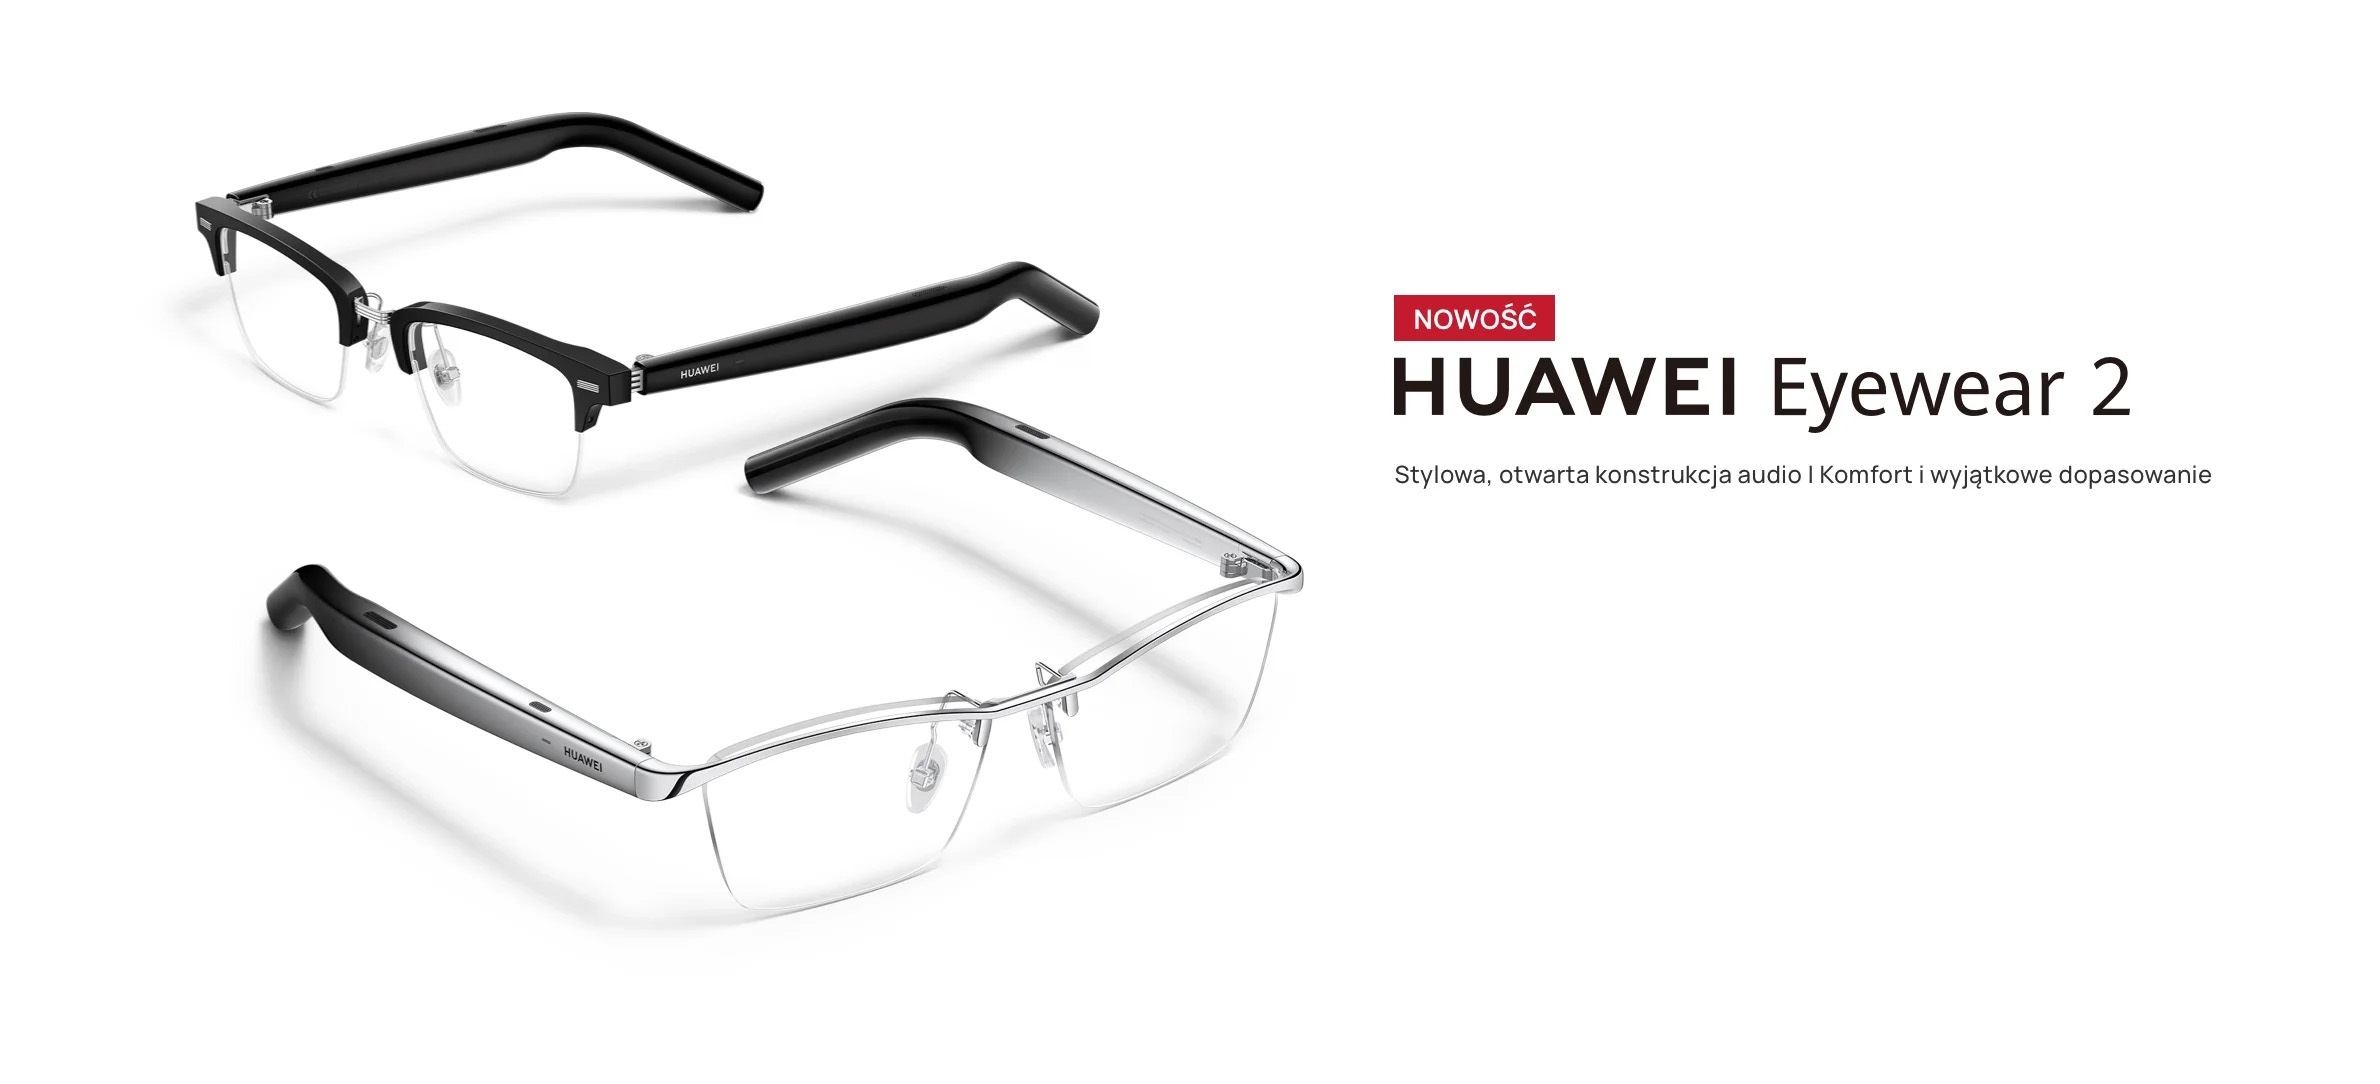 Inteligentne okulary do... słuchania i połączeń głosowych. HUAWEI Eyewear 2 zadebiutowały w Polsce